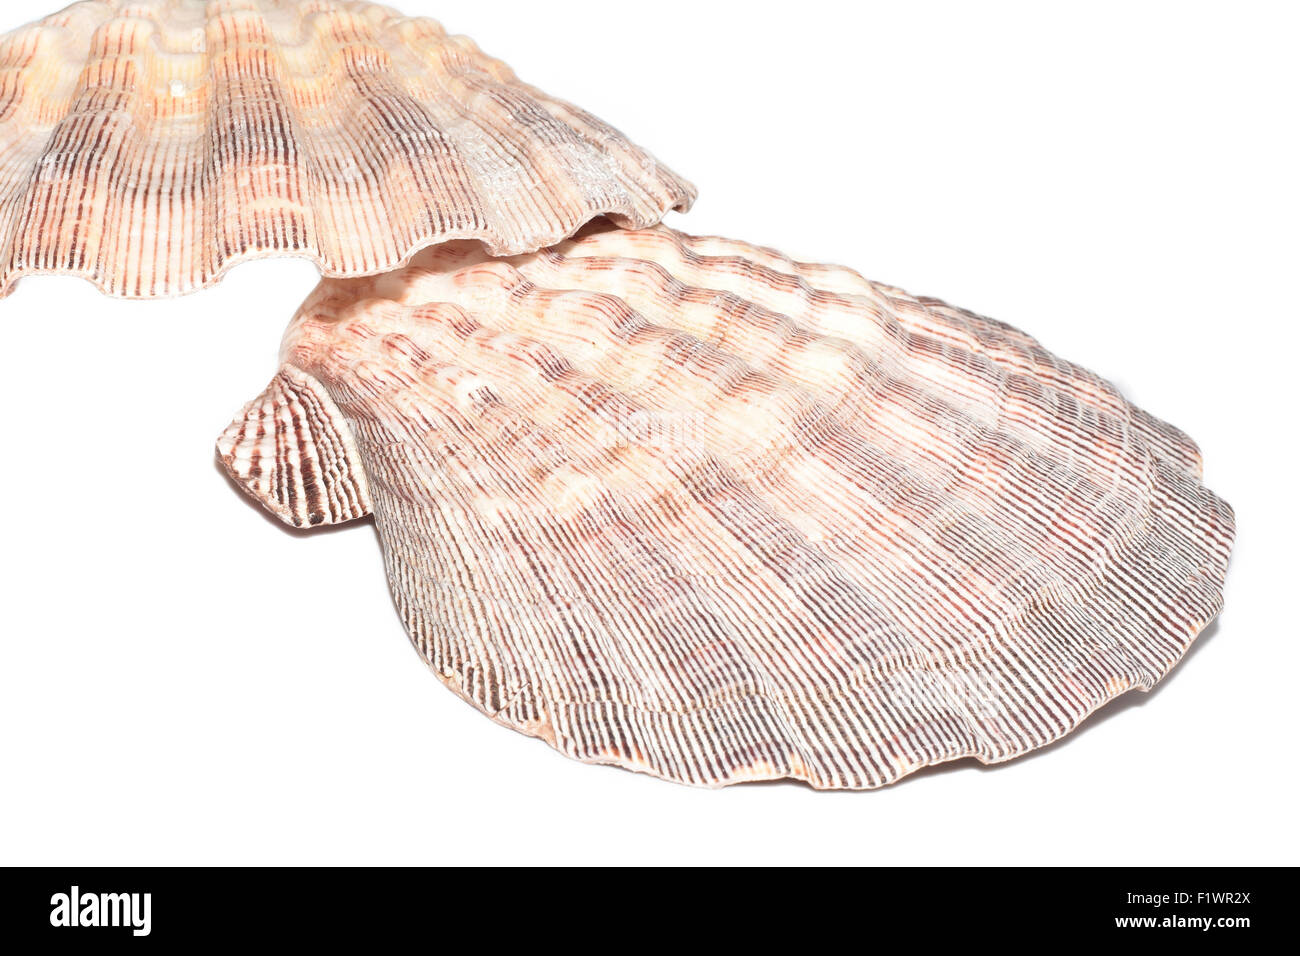 Les mollusques marins nodosus Lyropecten sur fond blanc Banque D'Images